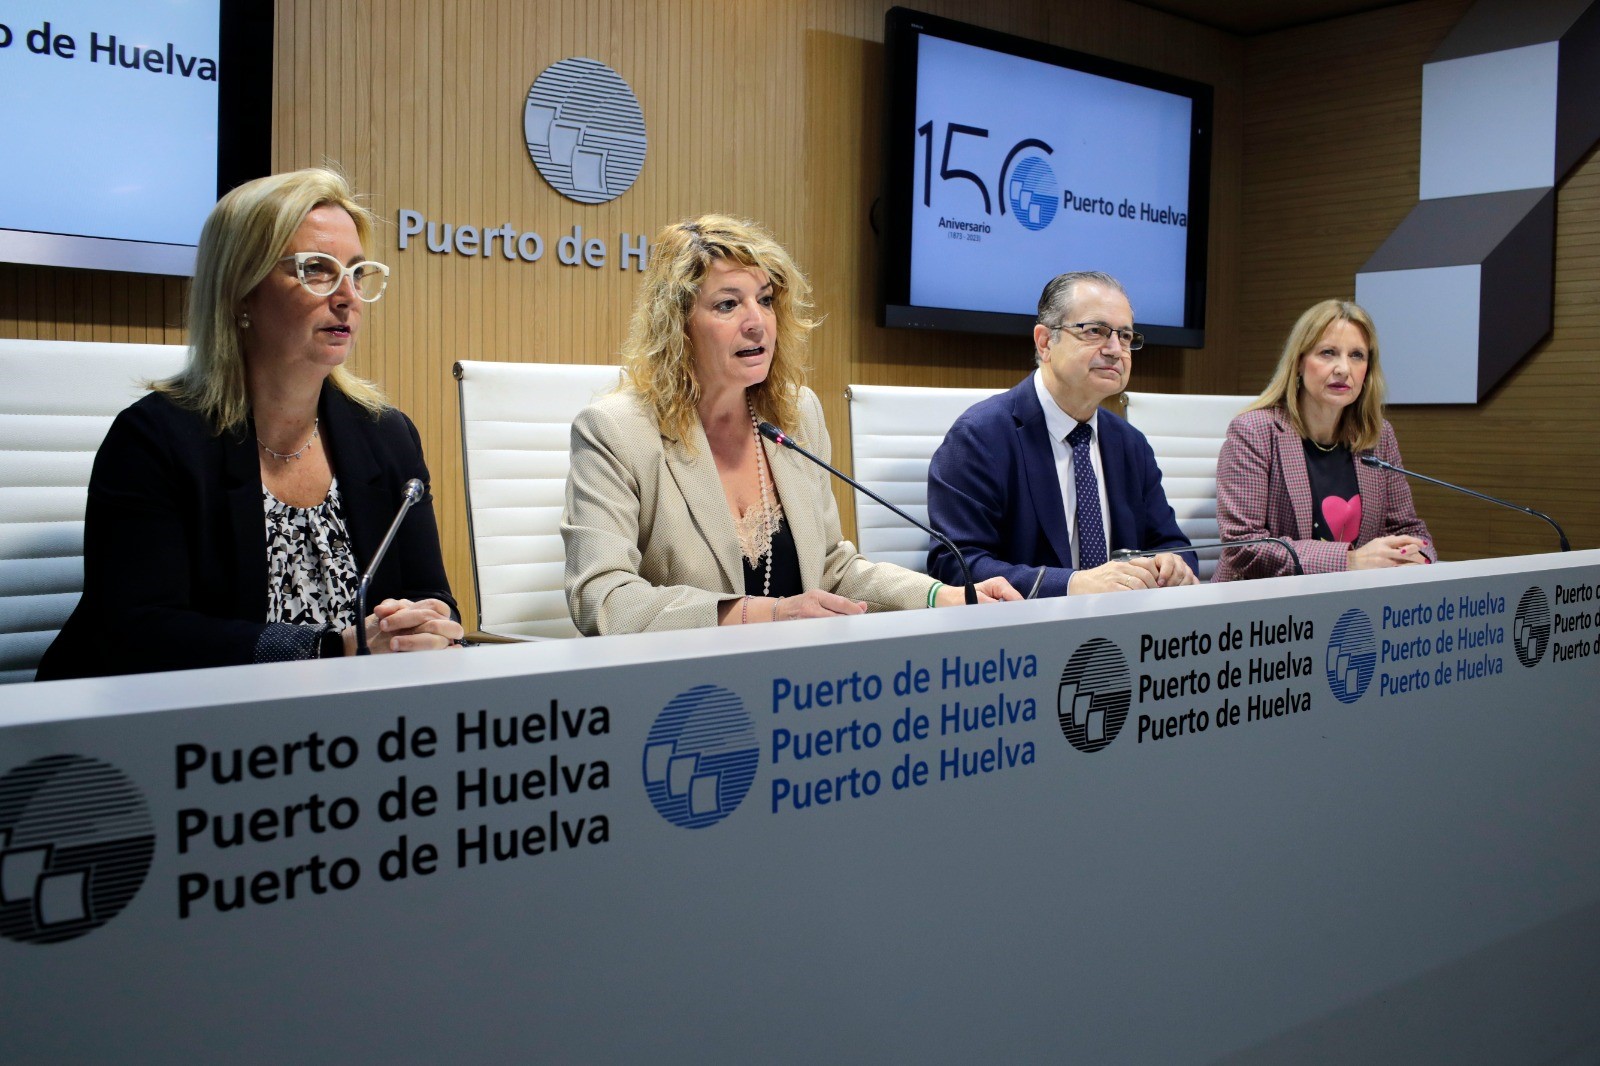 La Autoridad Portuaria de Huelva se suma como entidad patrocinadora del 38 Congreso SAMIUC